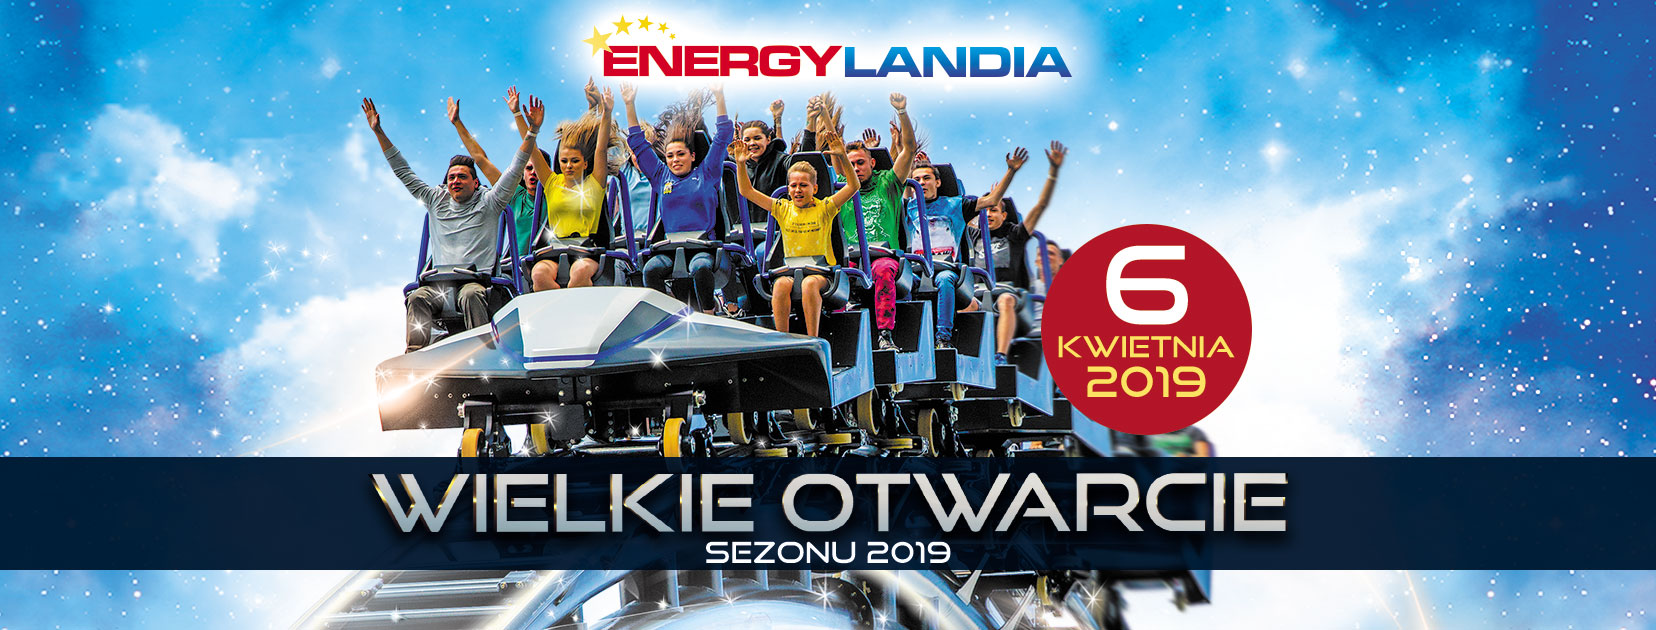 Wielkie otwarcie sezonu 2019 w Energylandii!